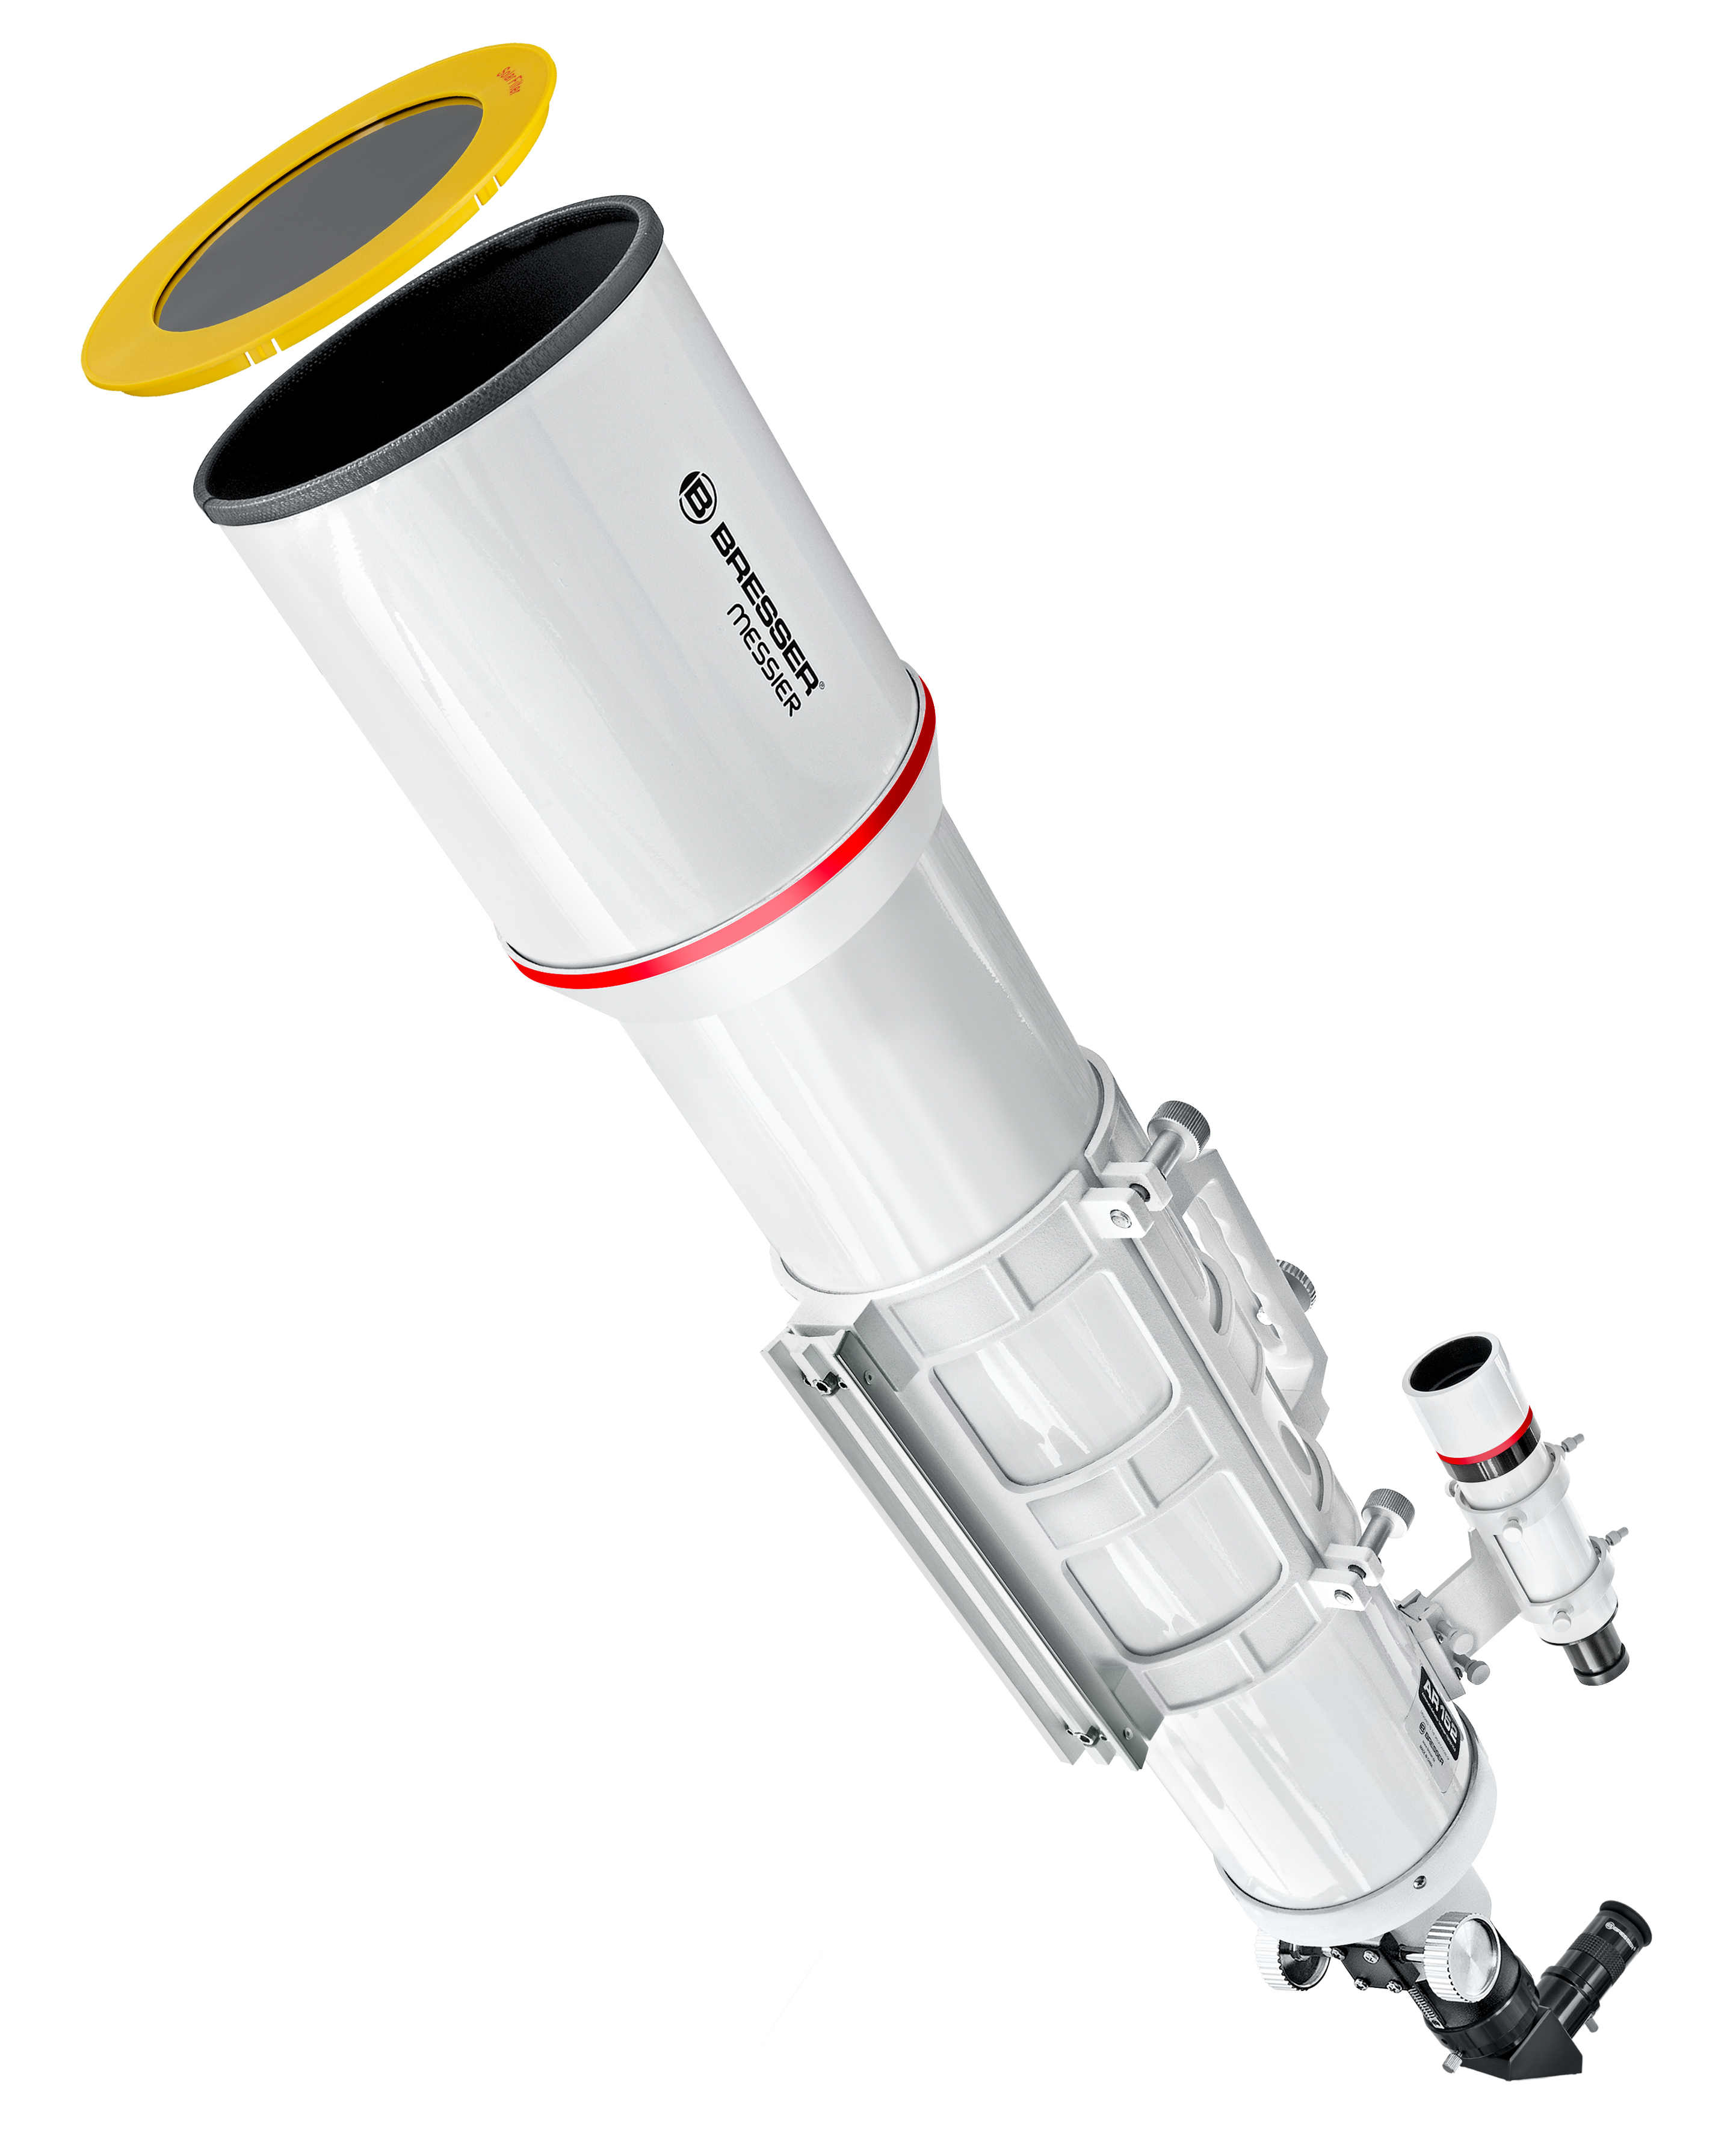 Tubo ottico Messier BRESSER AR-152S/760 Hexafoc